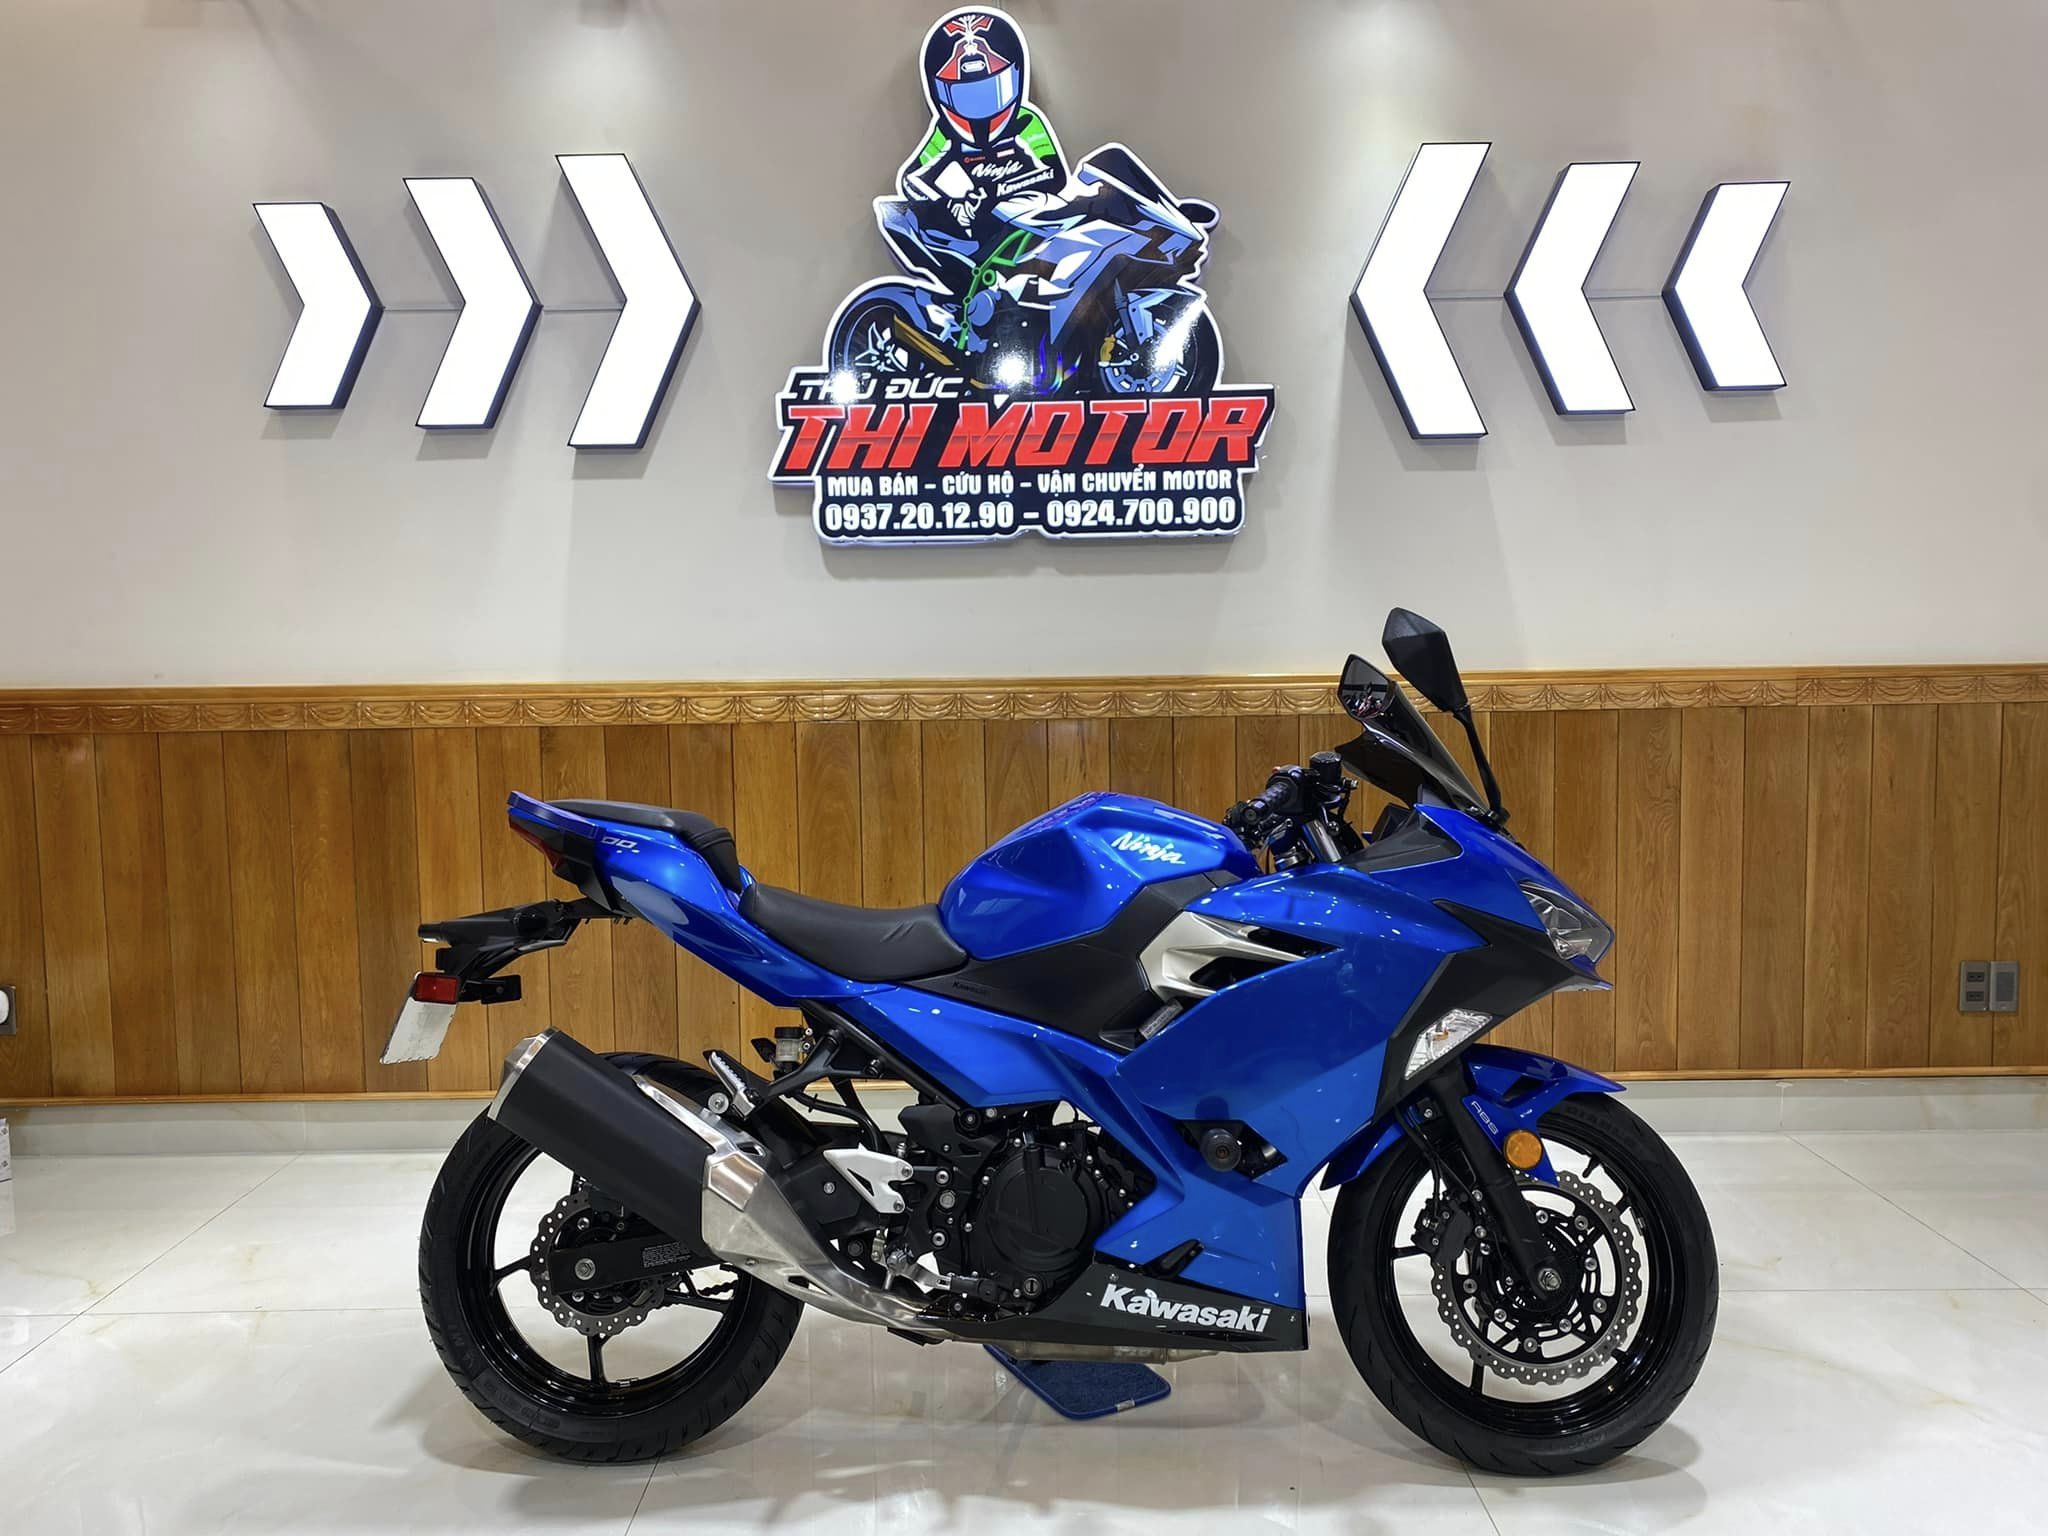 Kawasaki ra mẫu xe côn tay cạnh tranh với Winner X và Exciter ưa thích của  biker Việt  CafeAutoVn